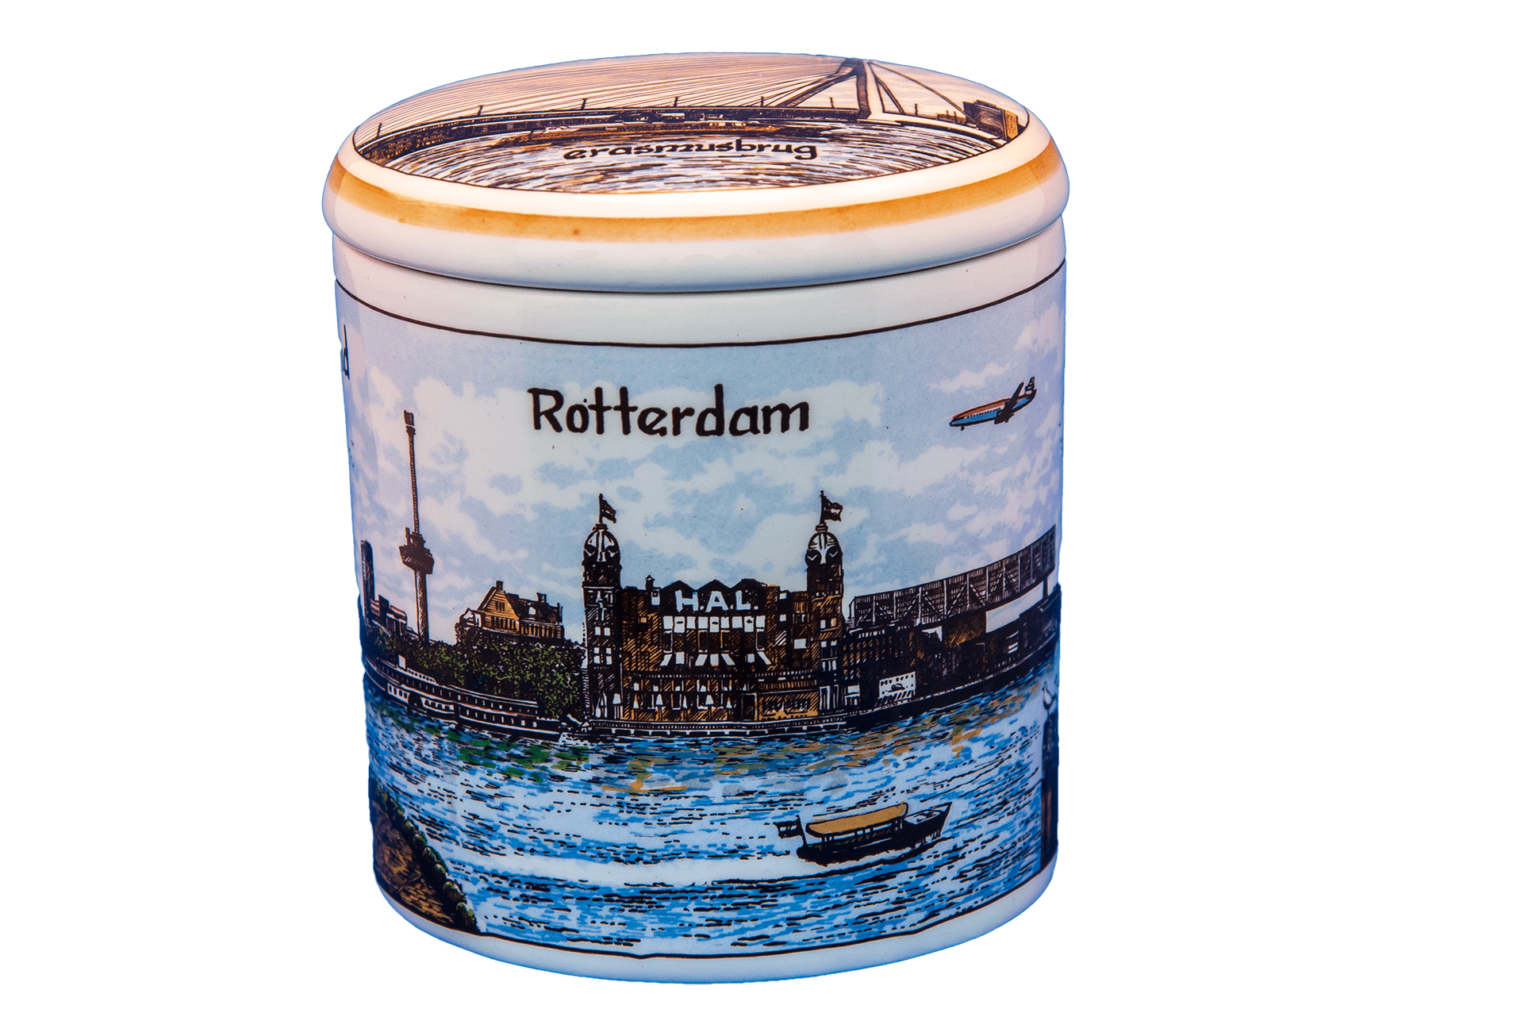 Pot aardewerk kleur, met oud-Hollandse print van Rotterdam